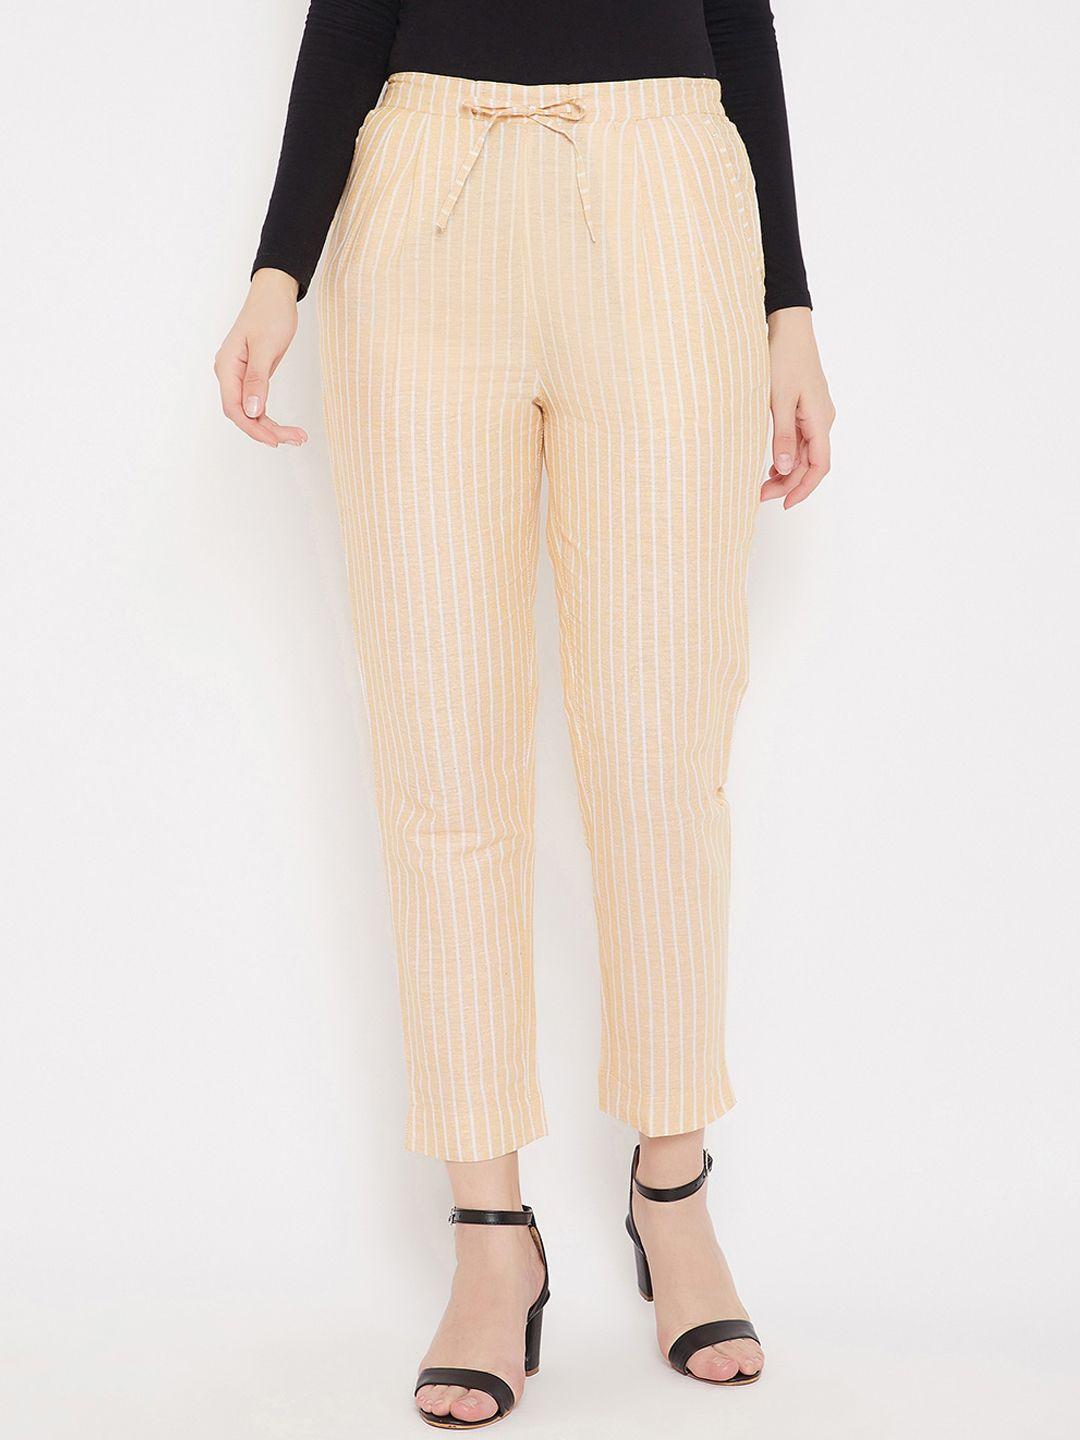 bitterlime-women-mustard-yellow-striped-smart-trousers